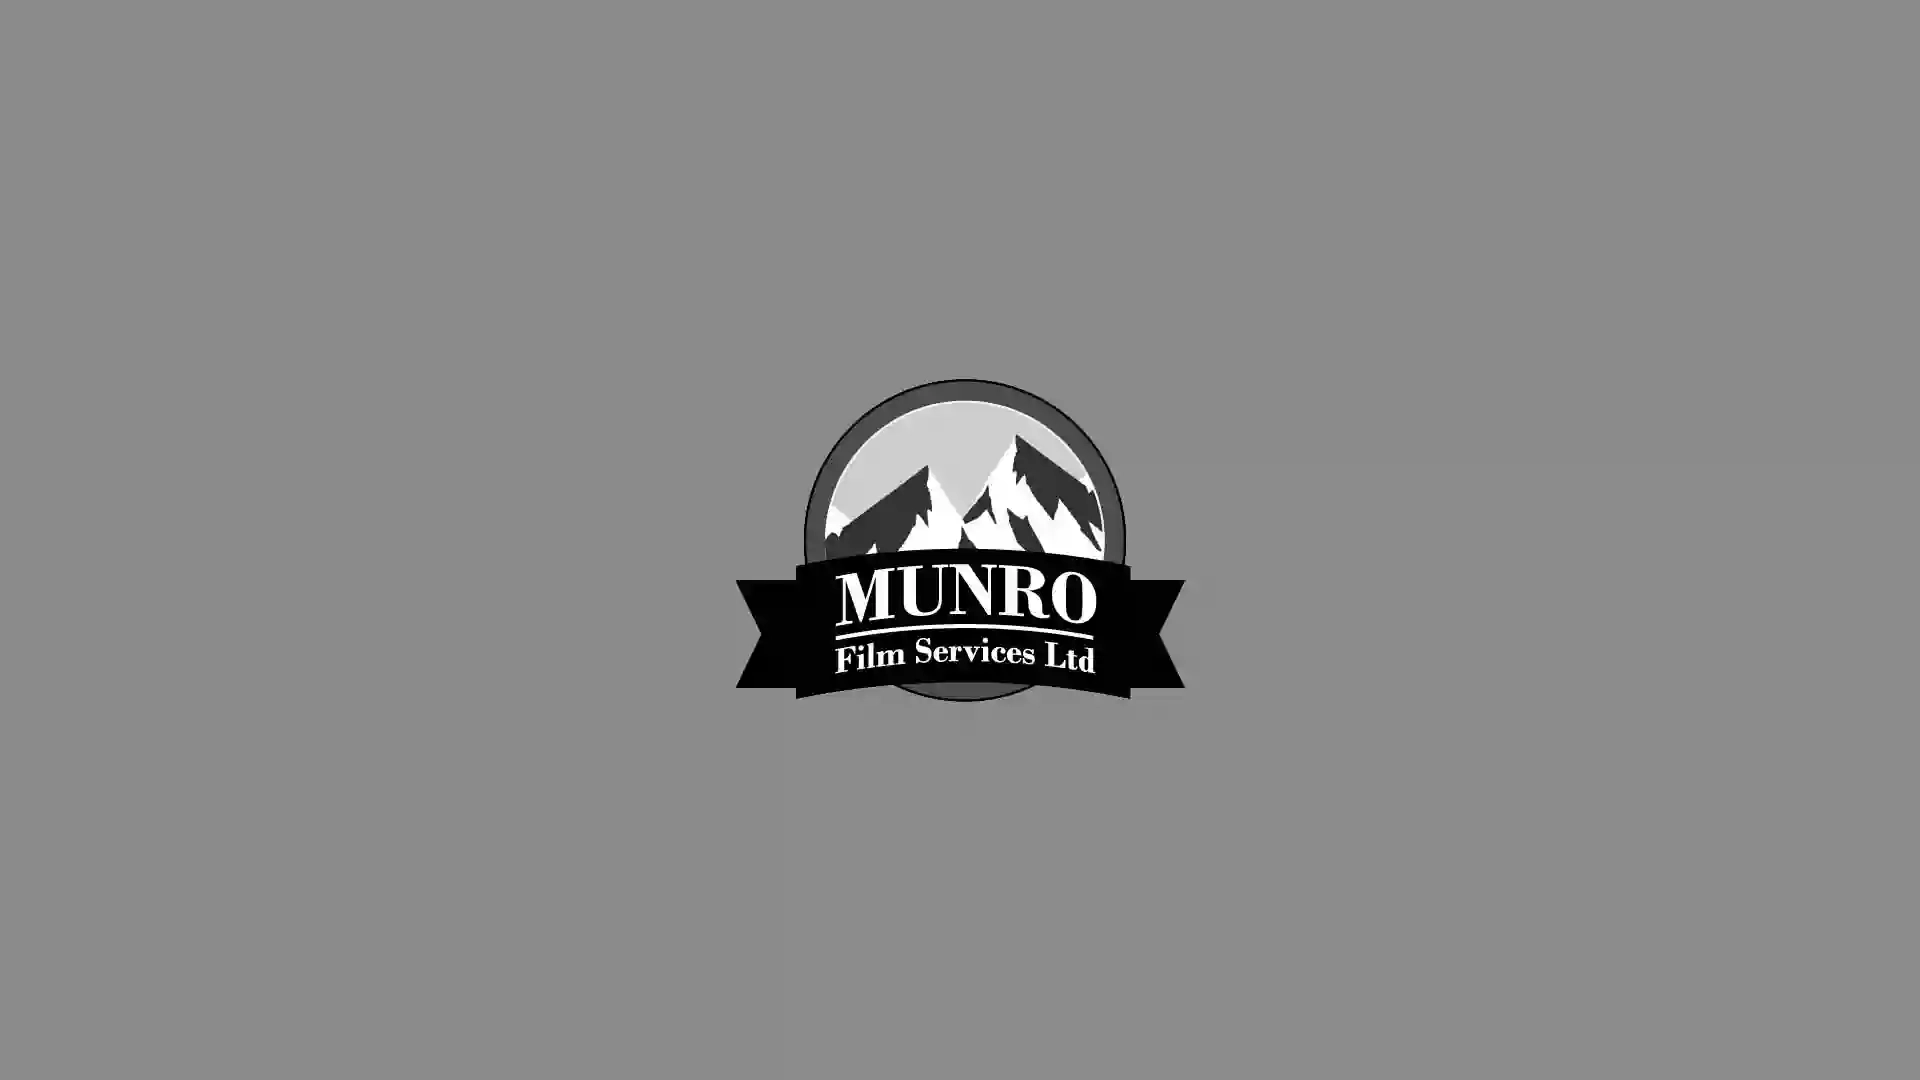 Munro Film Services Ltd